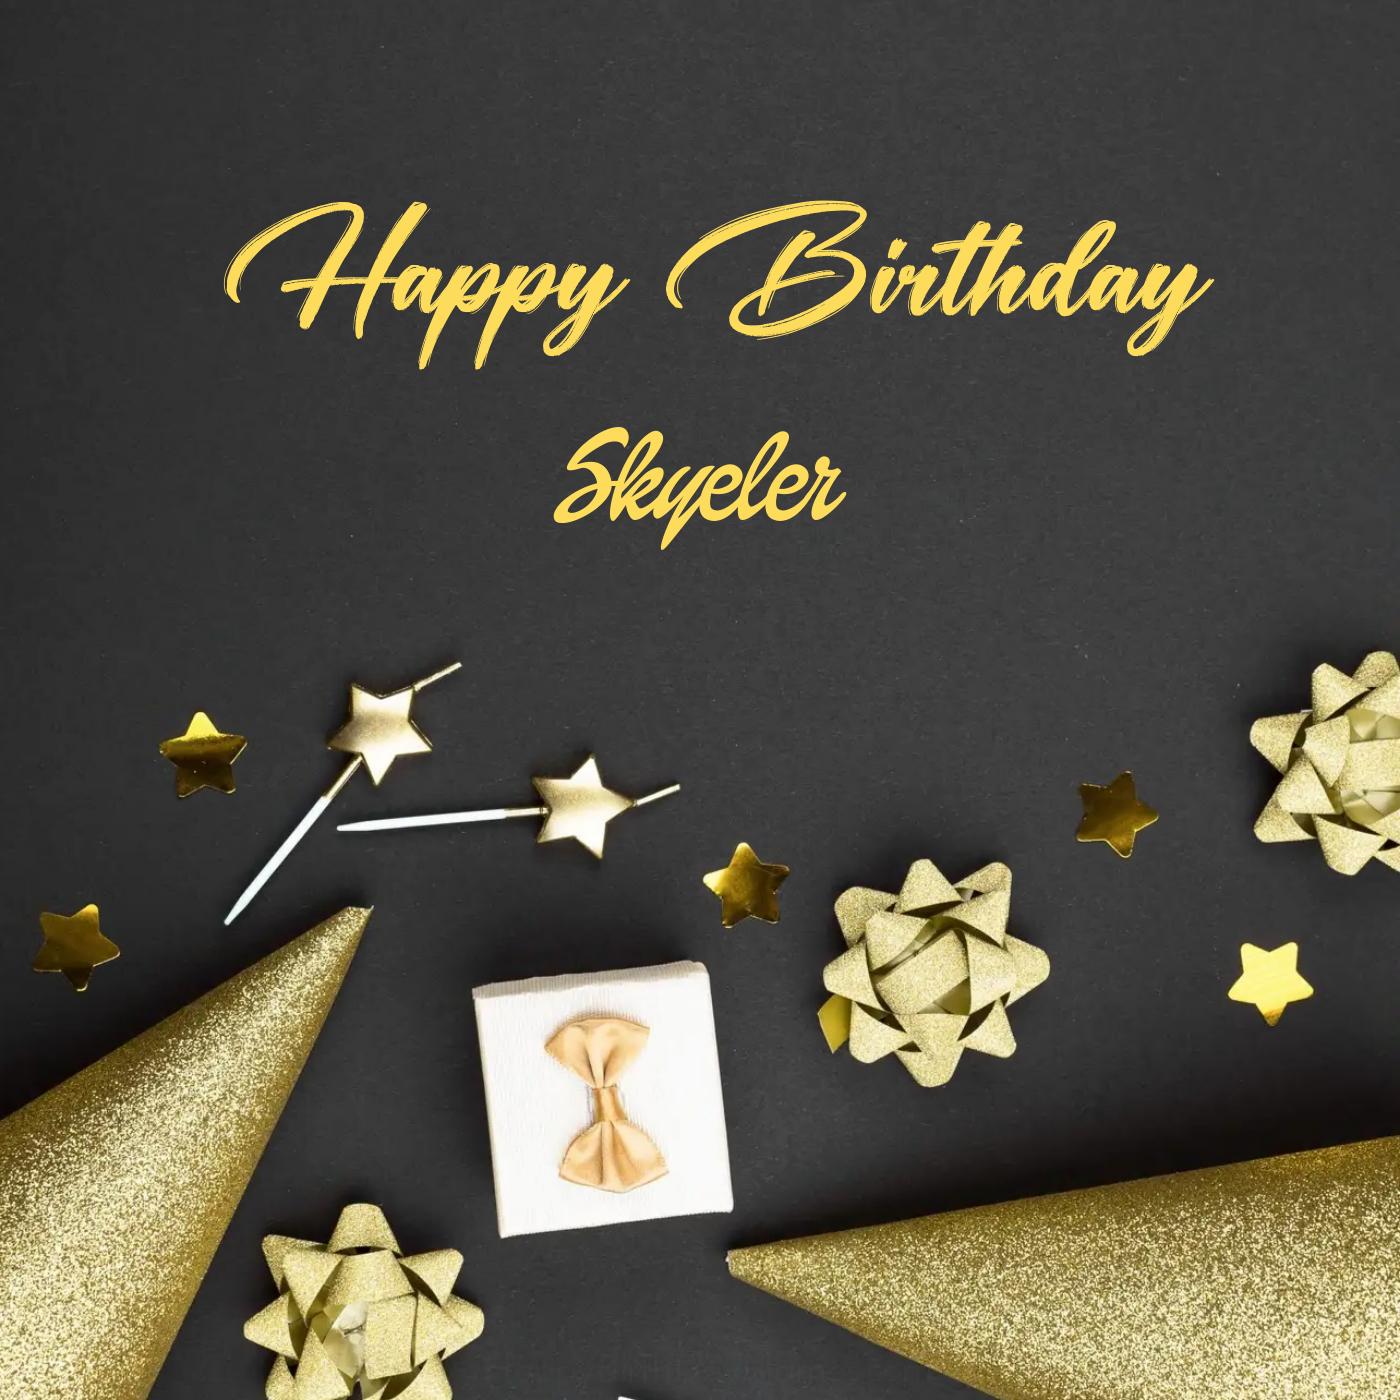 Happy Birthday Skyeler Golden Theme Card